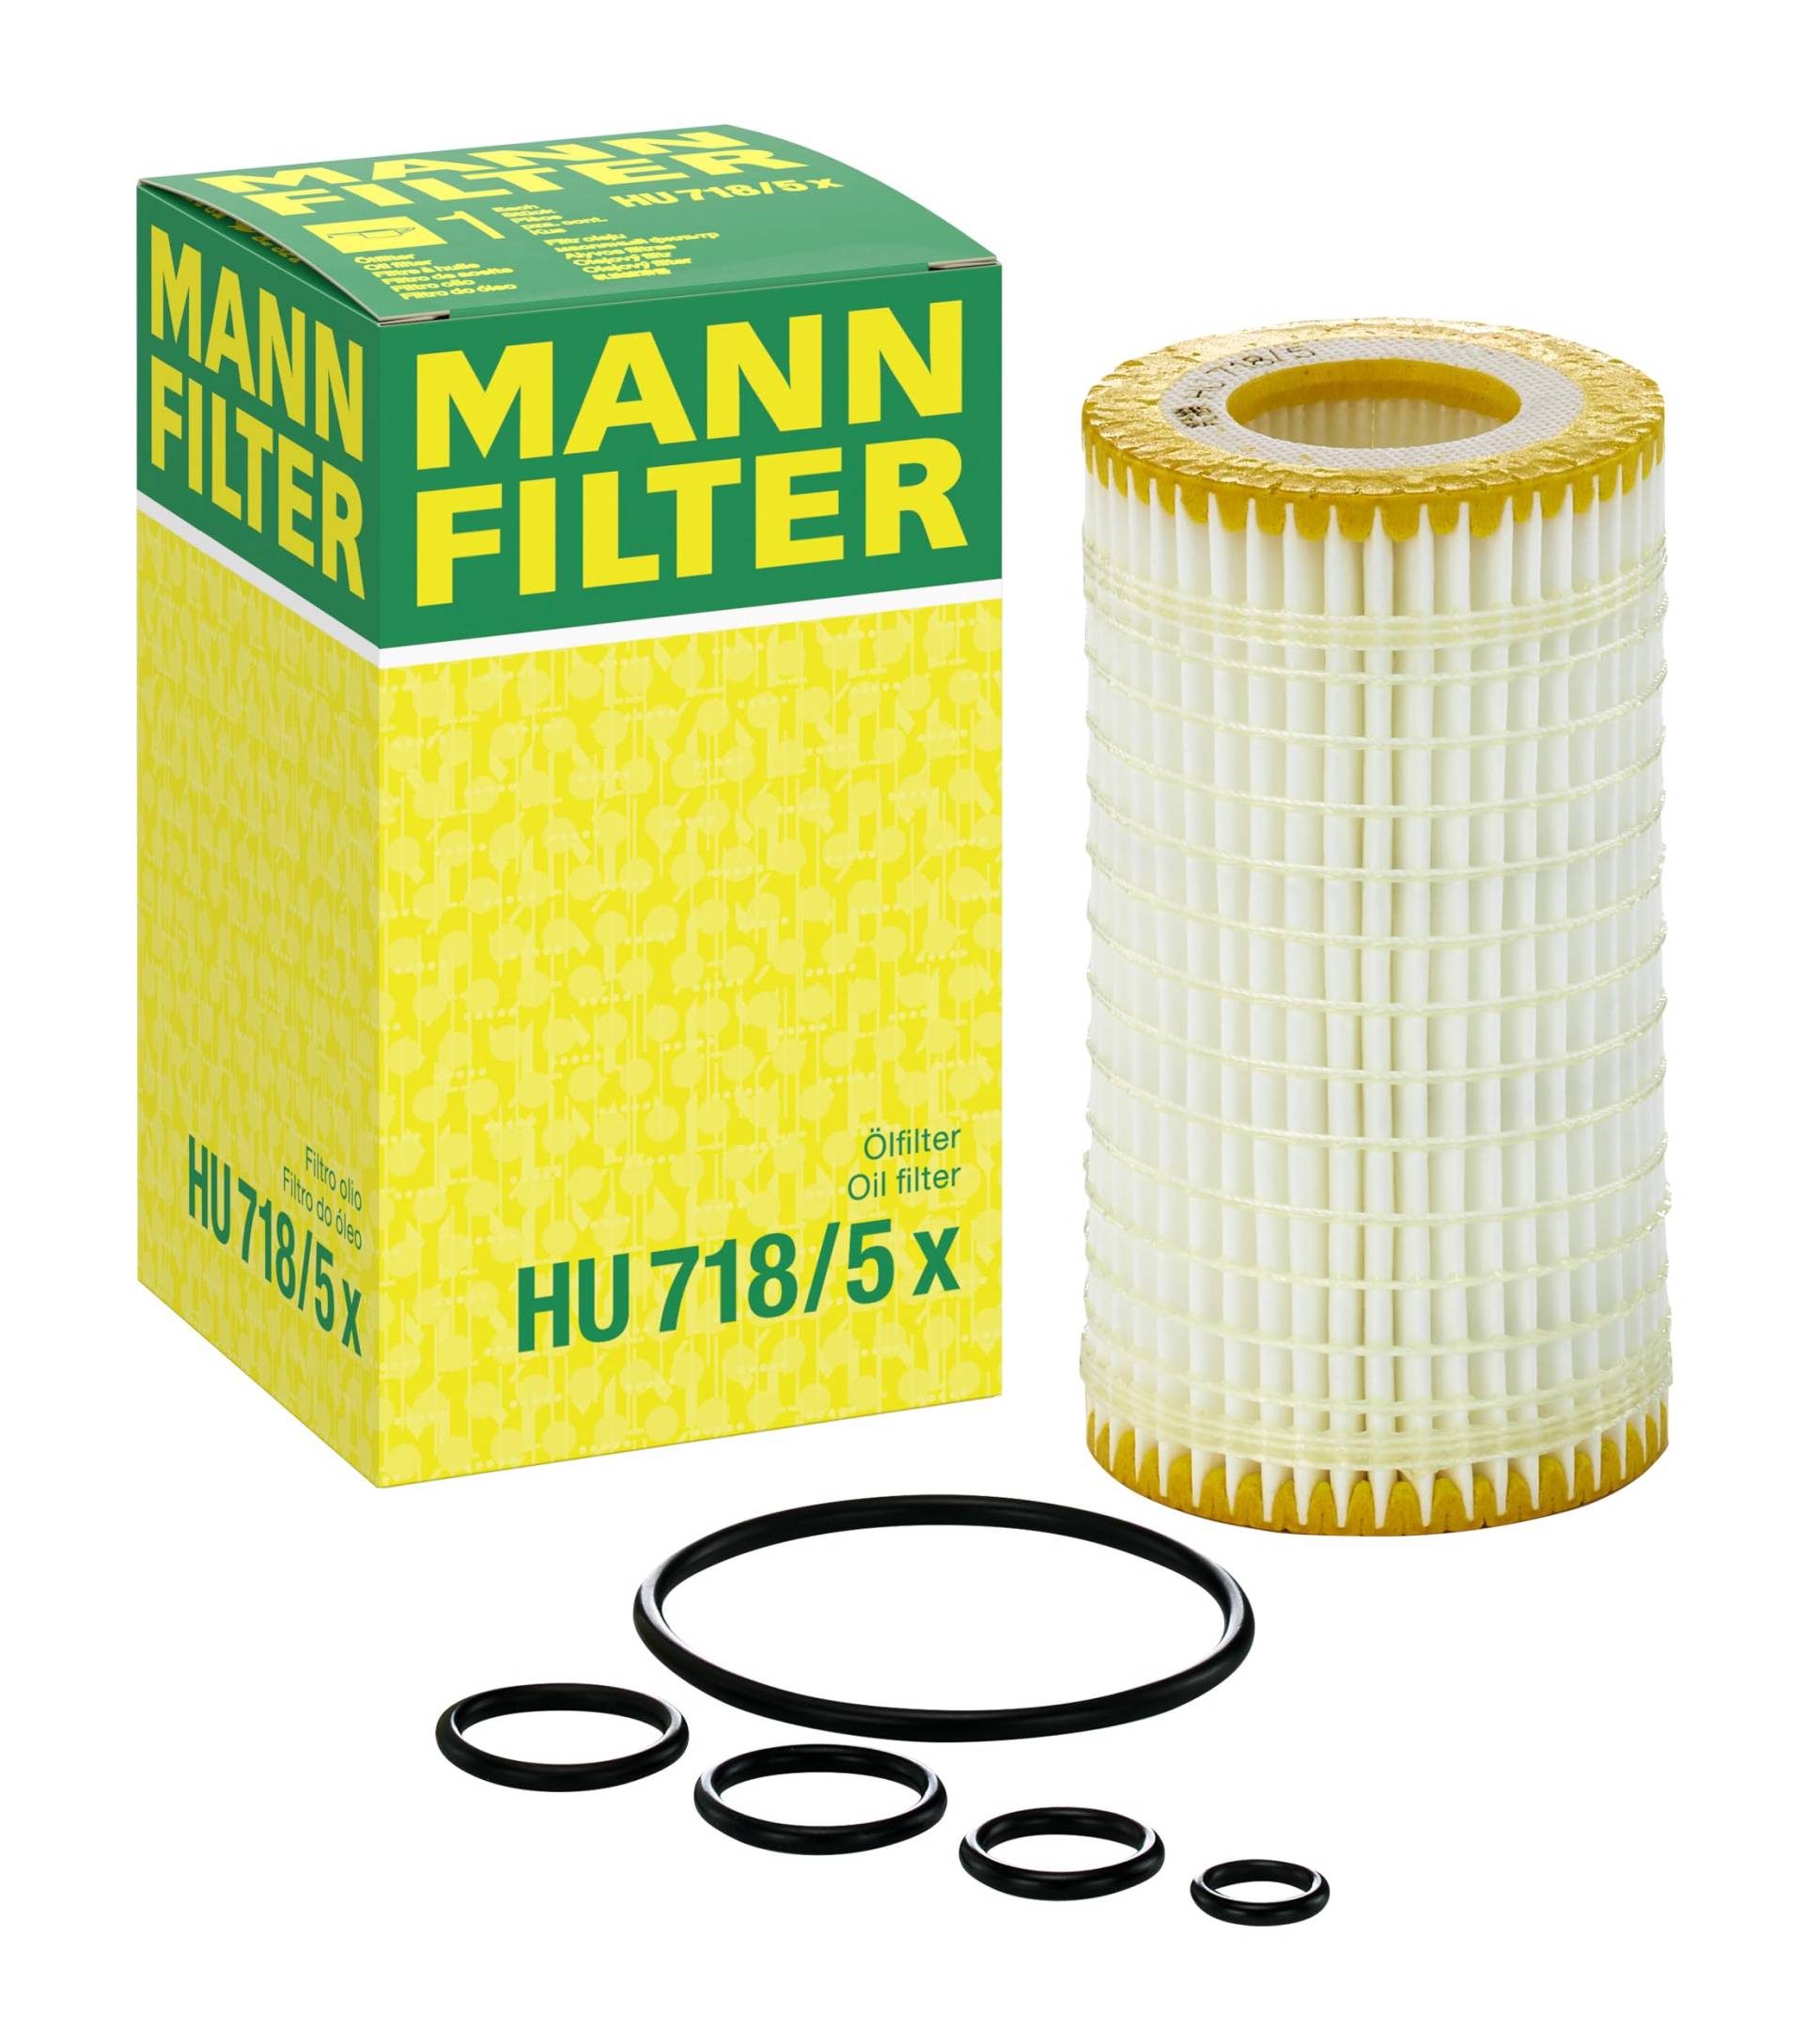 Original MANN-FILTER Ölfilter HU 718/5 X – Ölfilter Satz mit Dichtung / Dichtungssatz – Für PKW von MANN-FILTER